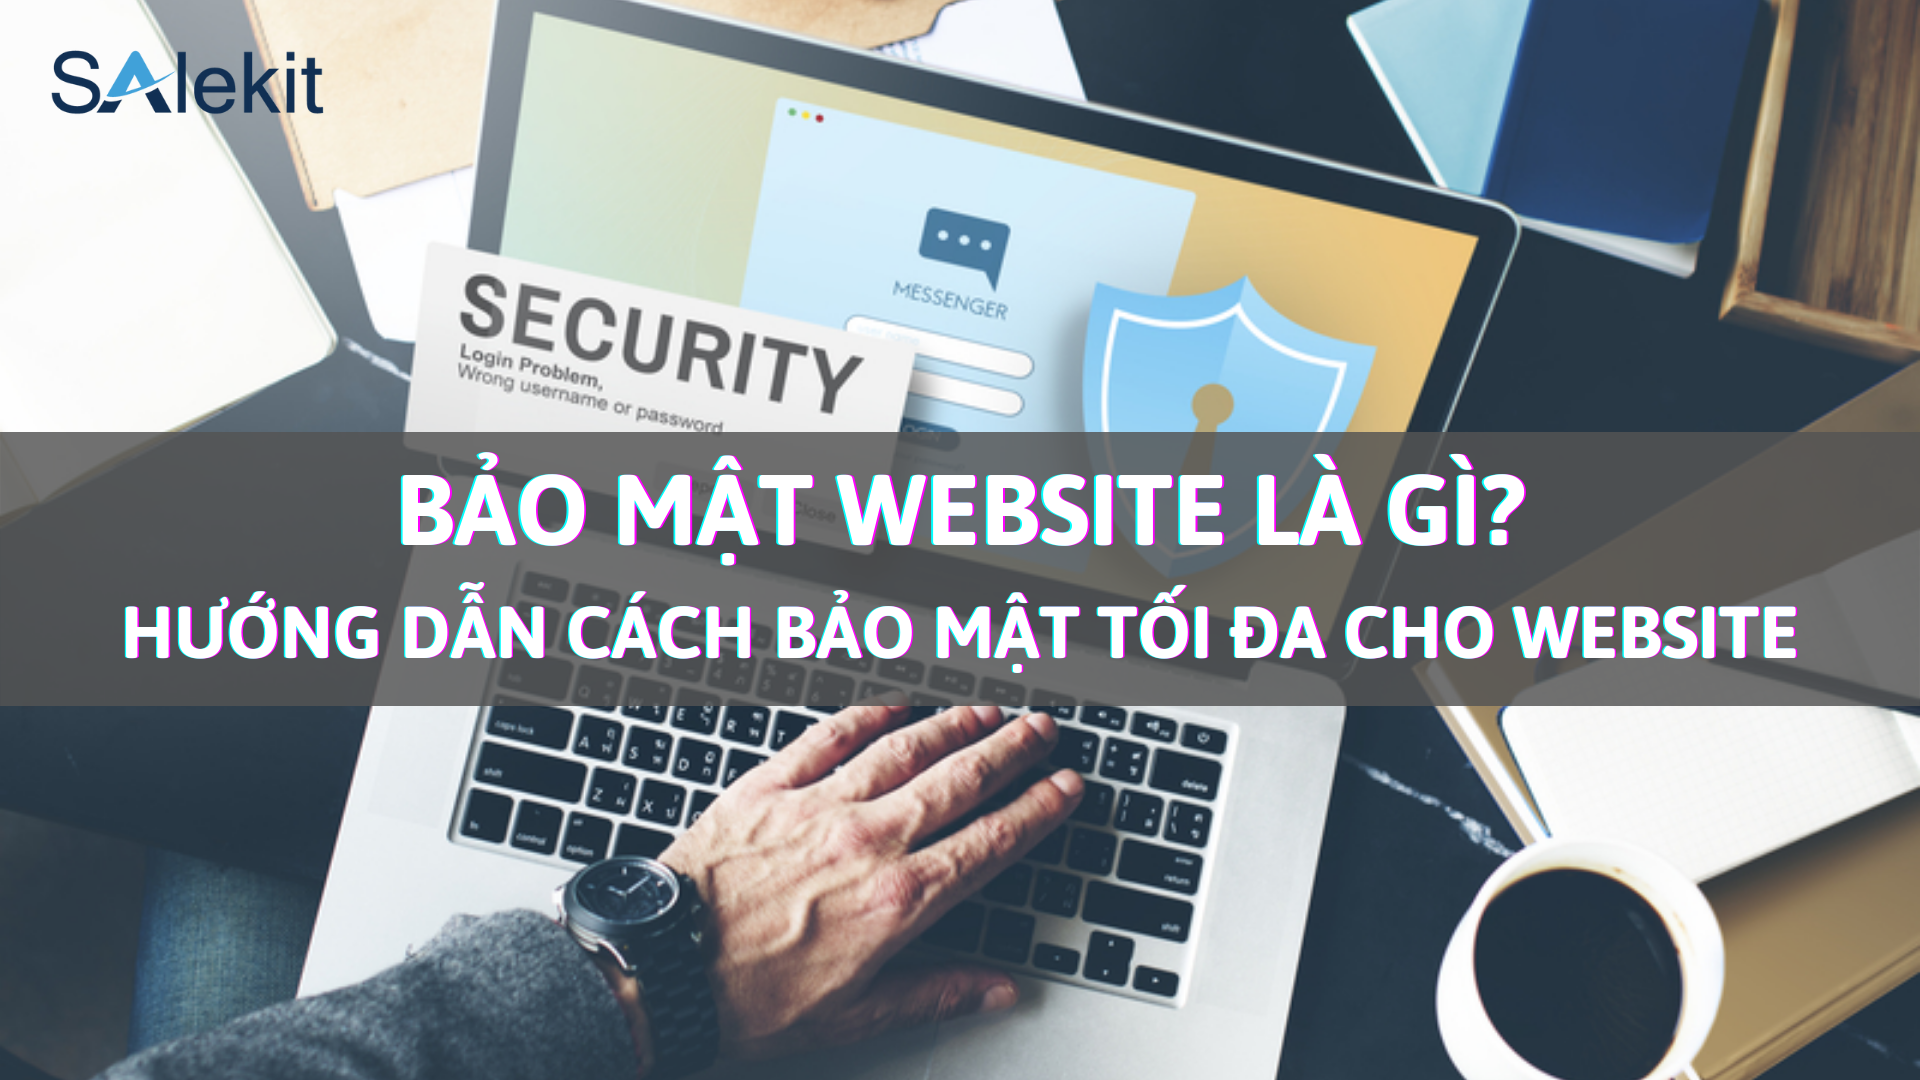 Bảo mật website là gì? Hướng dẫn cách bảo mật tối đa cho website 